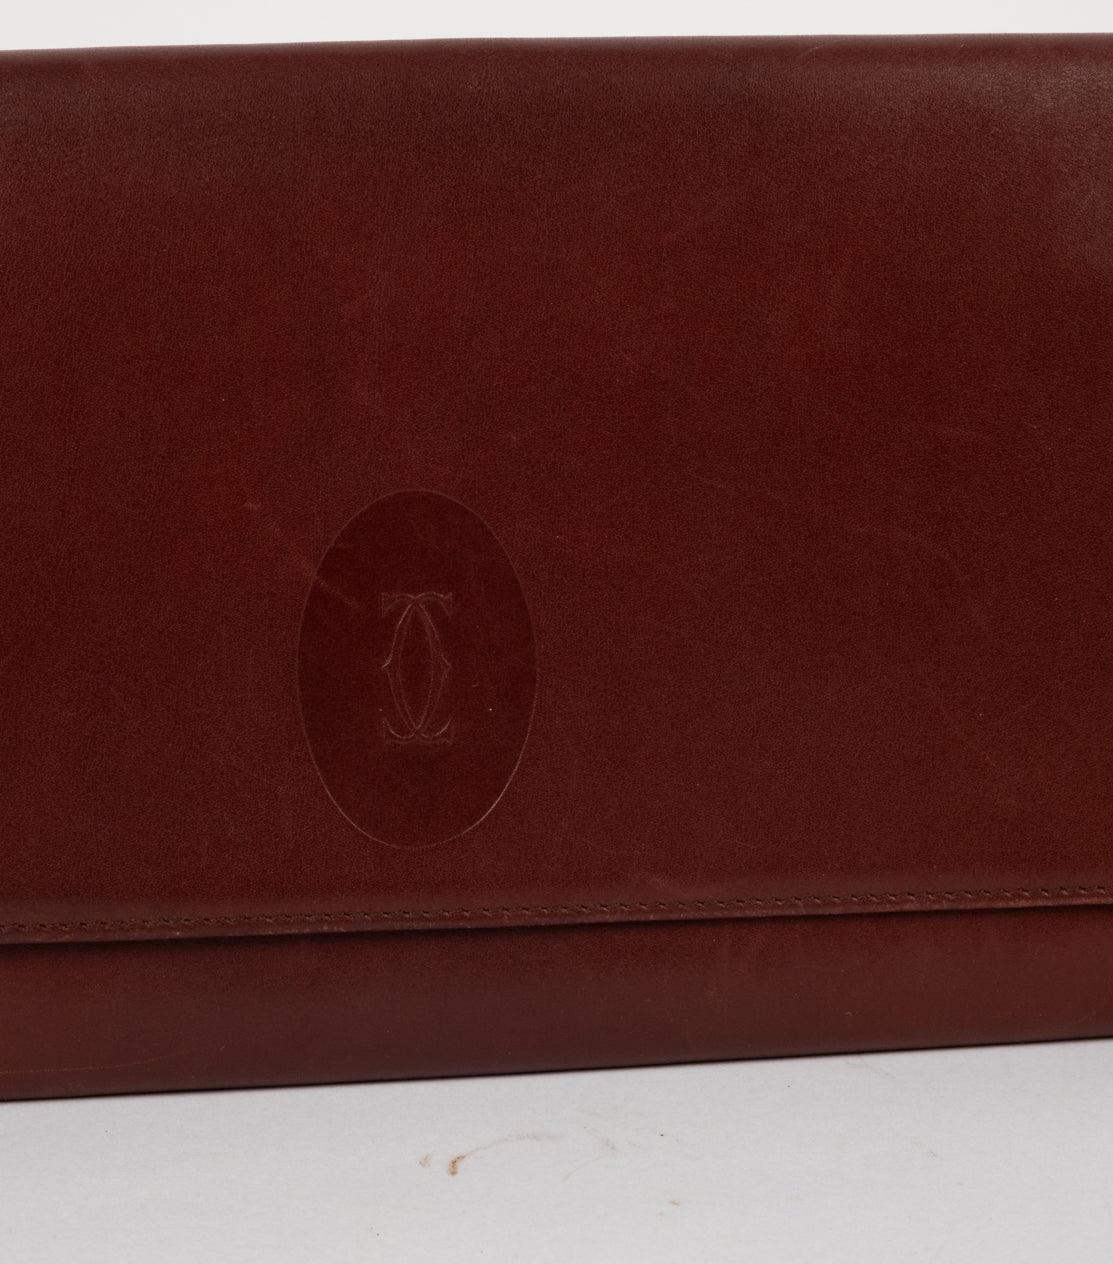 Bordeaux Leather Clutch Wallet - Volver